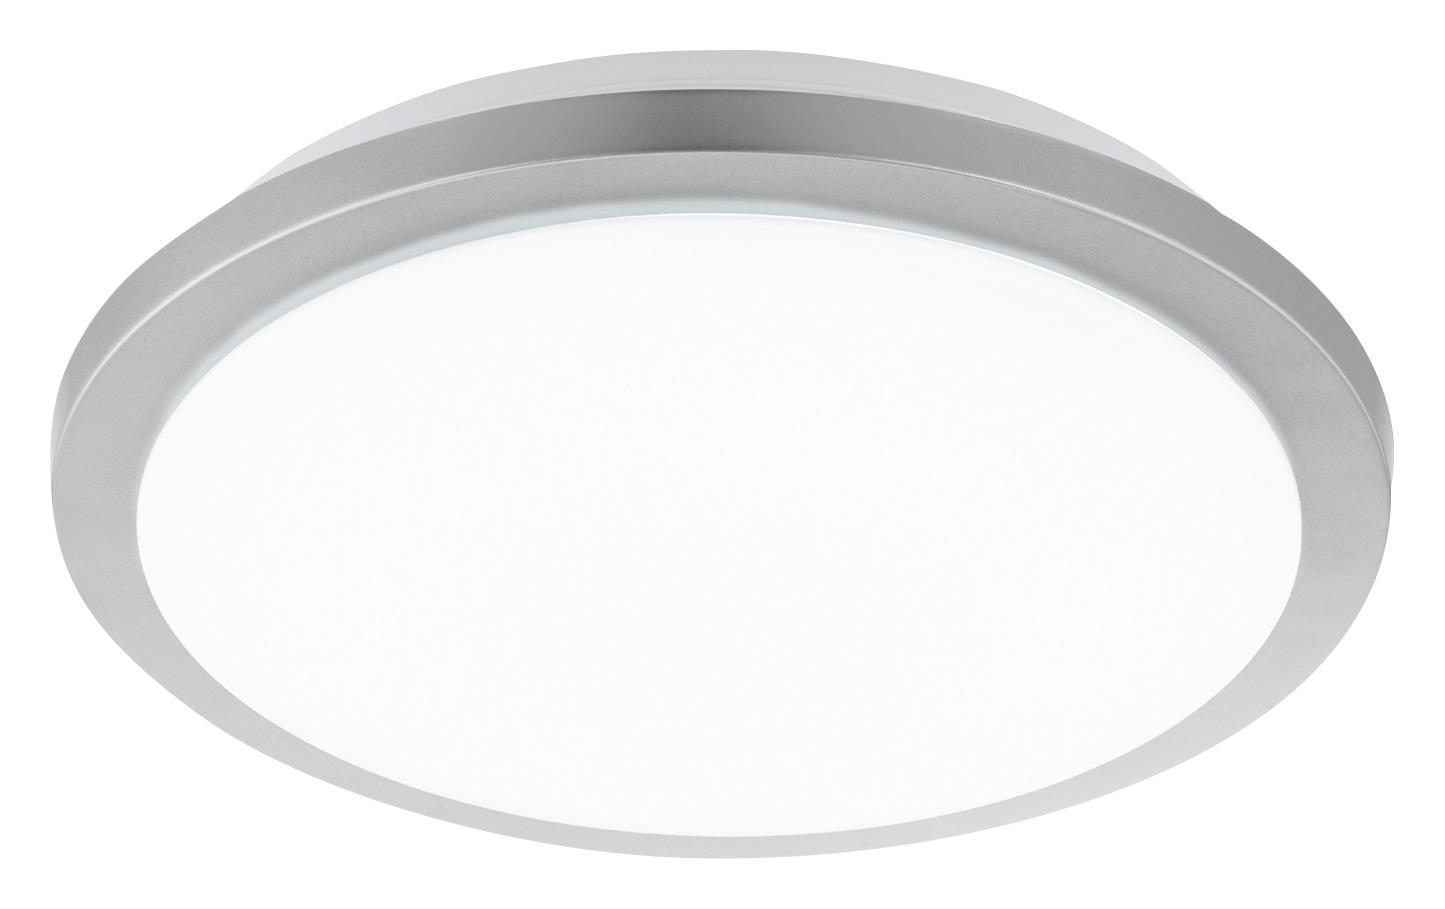 LED-Deckenleuchte Competa-St Ø 40 cm 4-Fach Schaltbar - Silberfarben/Weiß, Basics, Kunststoff/Metall (40/10cm)